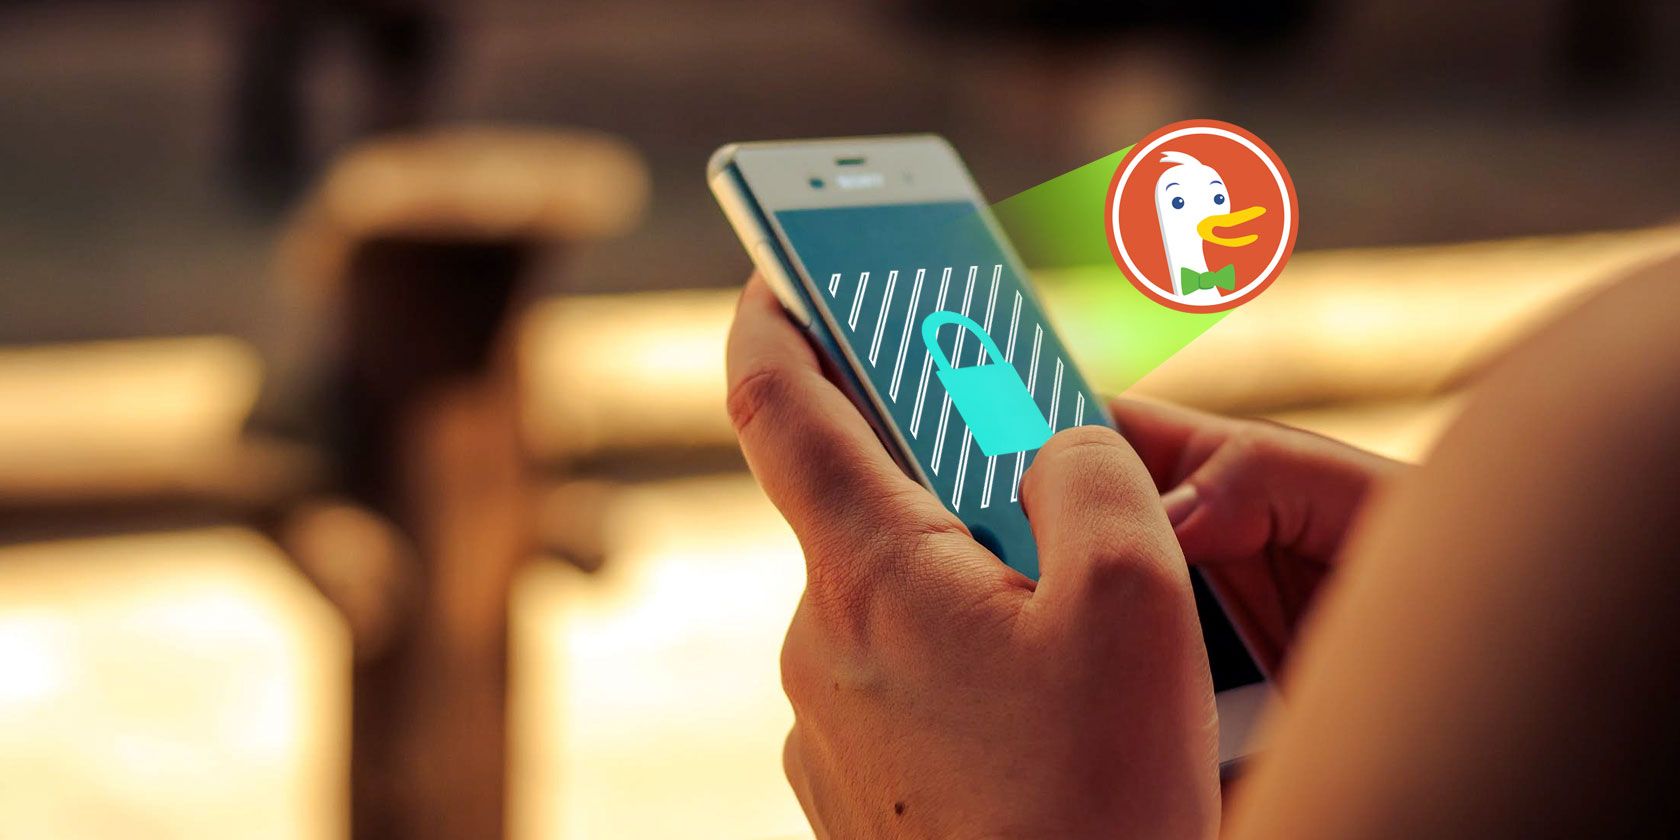 duckduckgo-apps-privacy